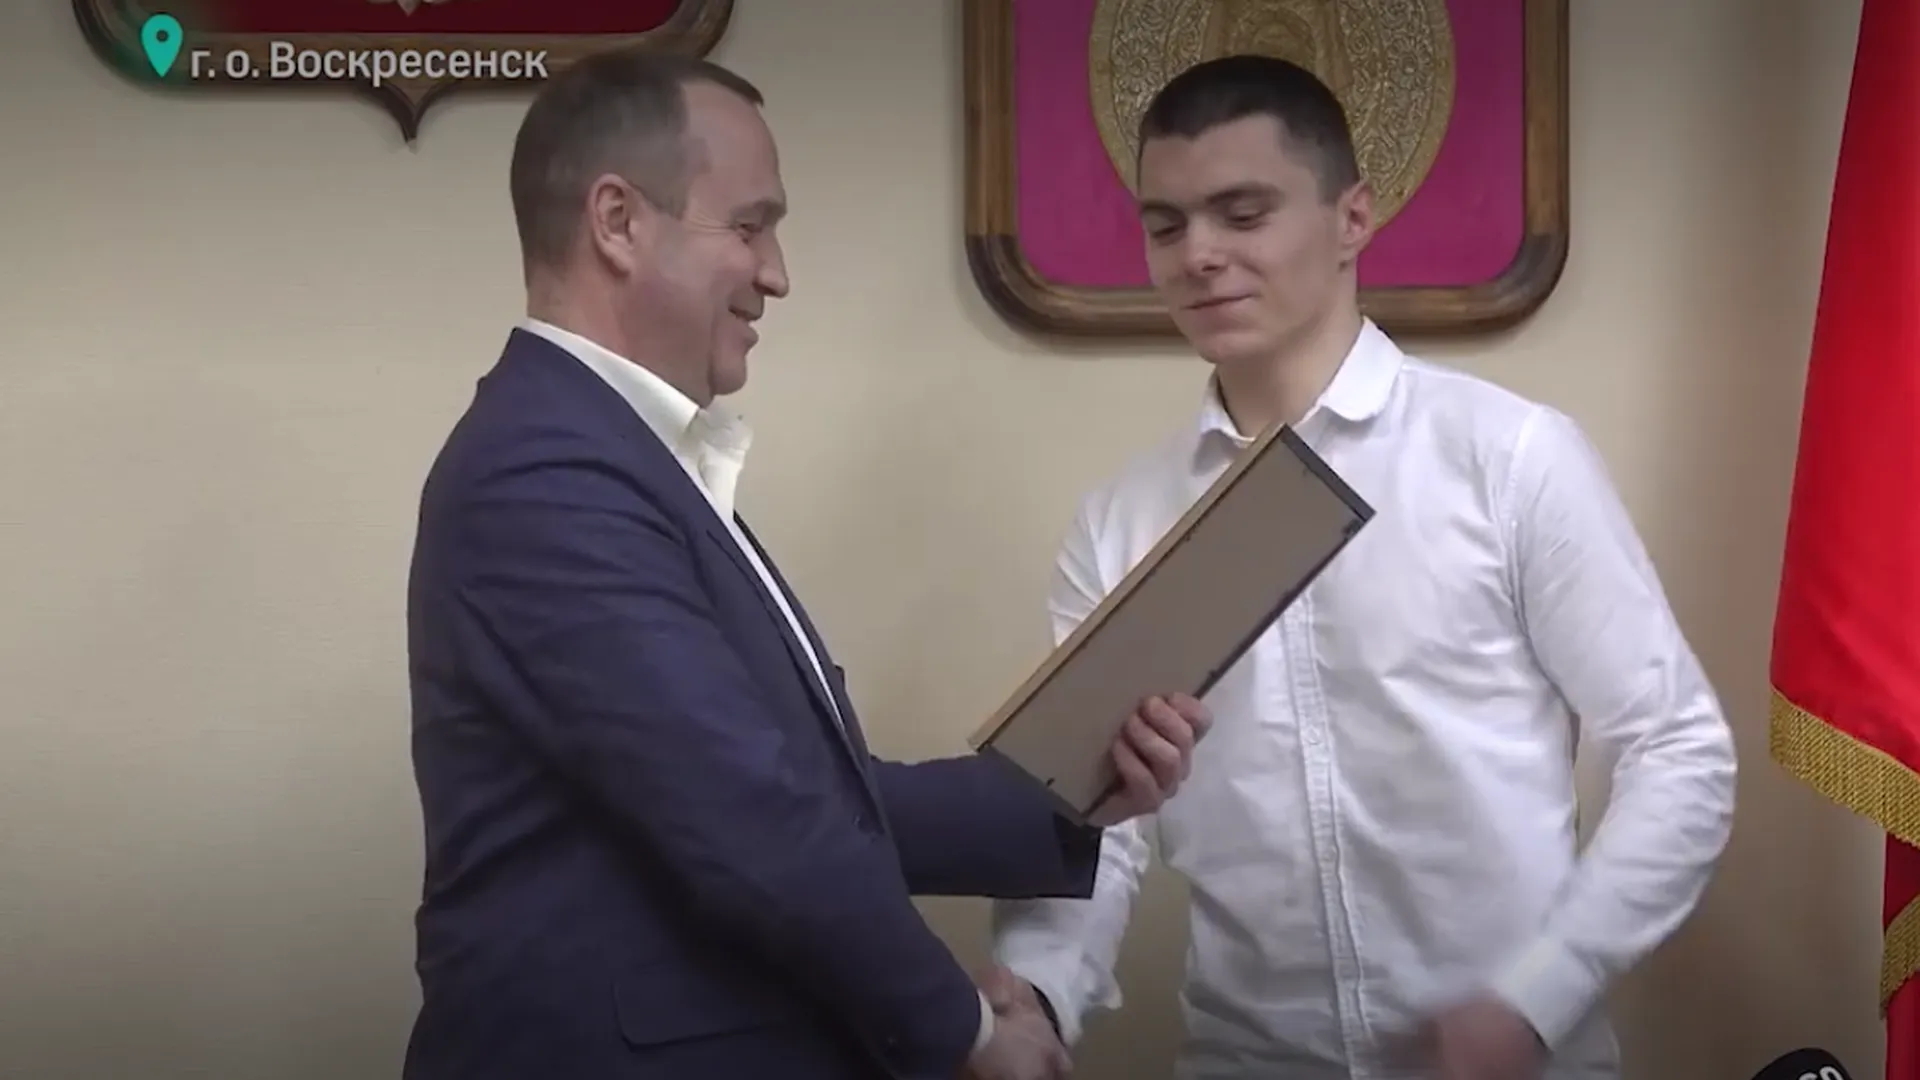 Сирота из Воскресенска стал обладателем первого жилищного сертификата в этом году